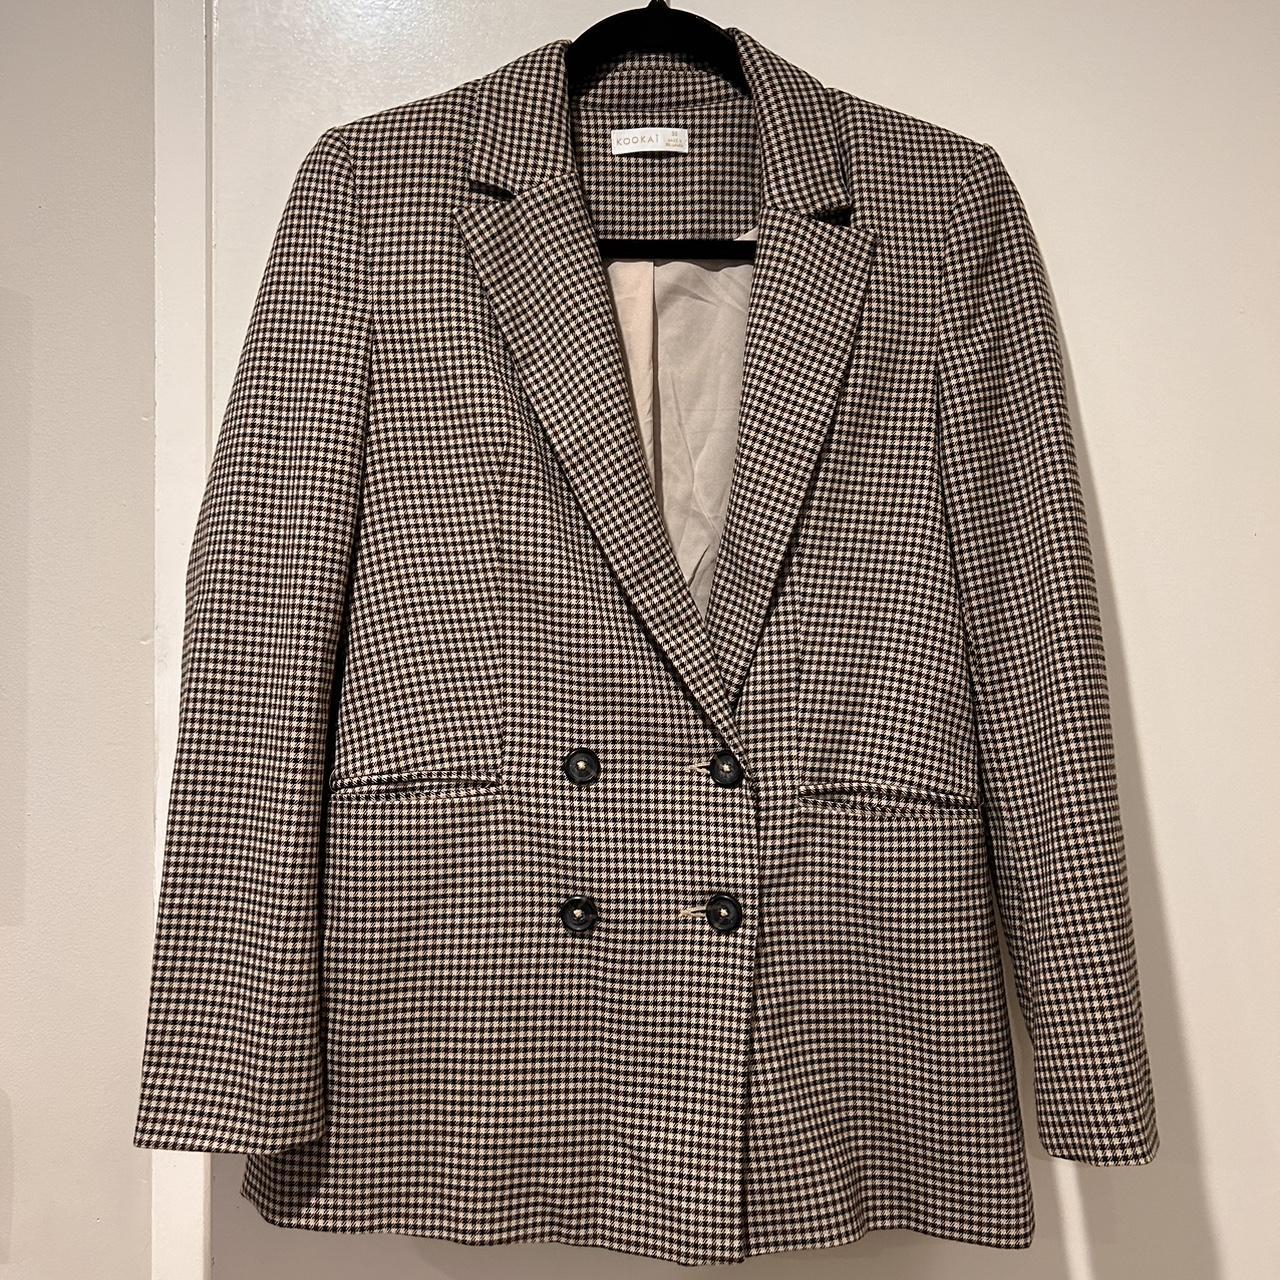 Kookai Double Breasted blazer/jacket Size... - Depop